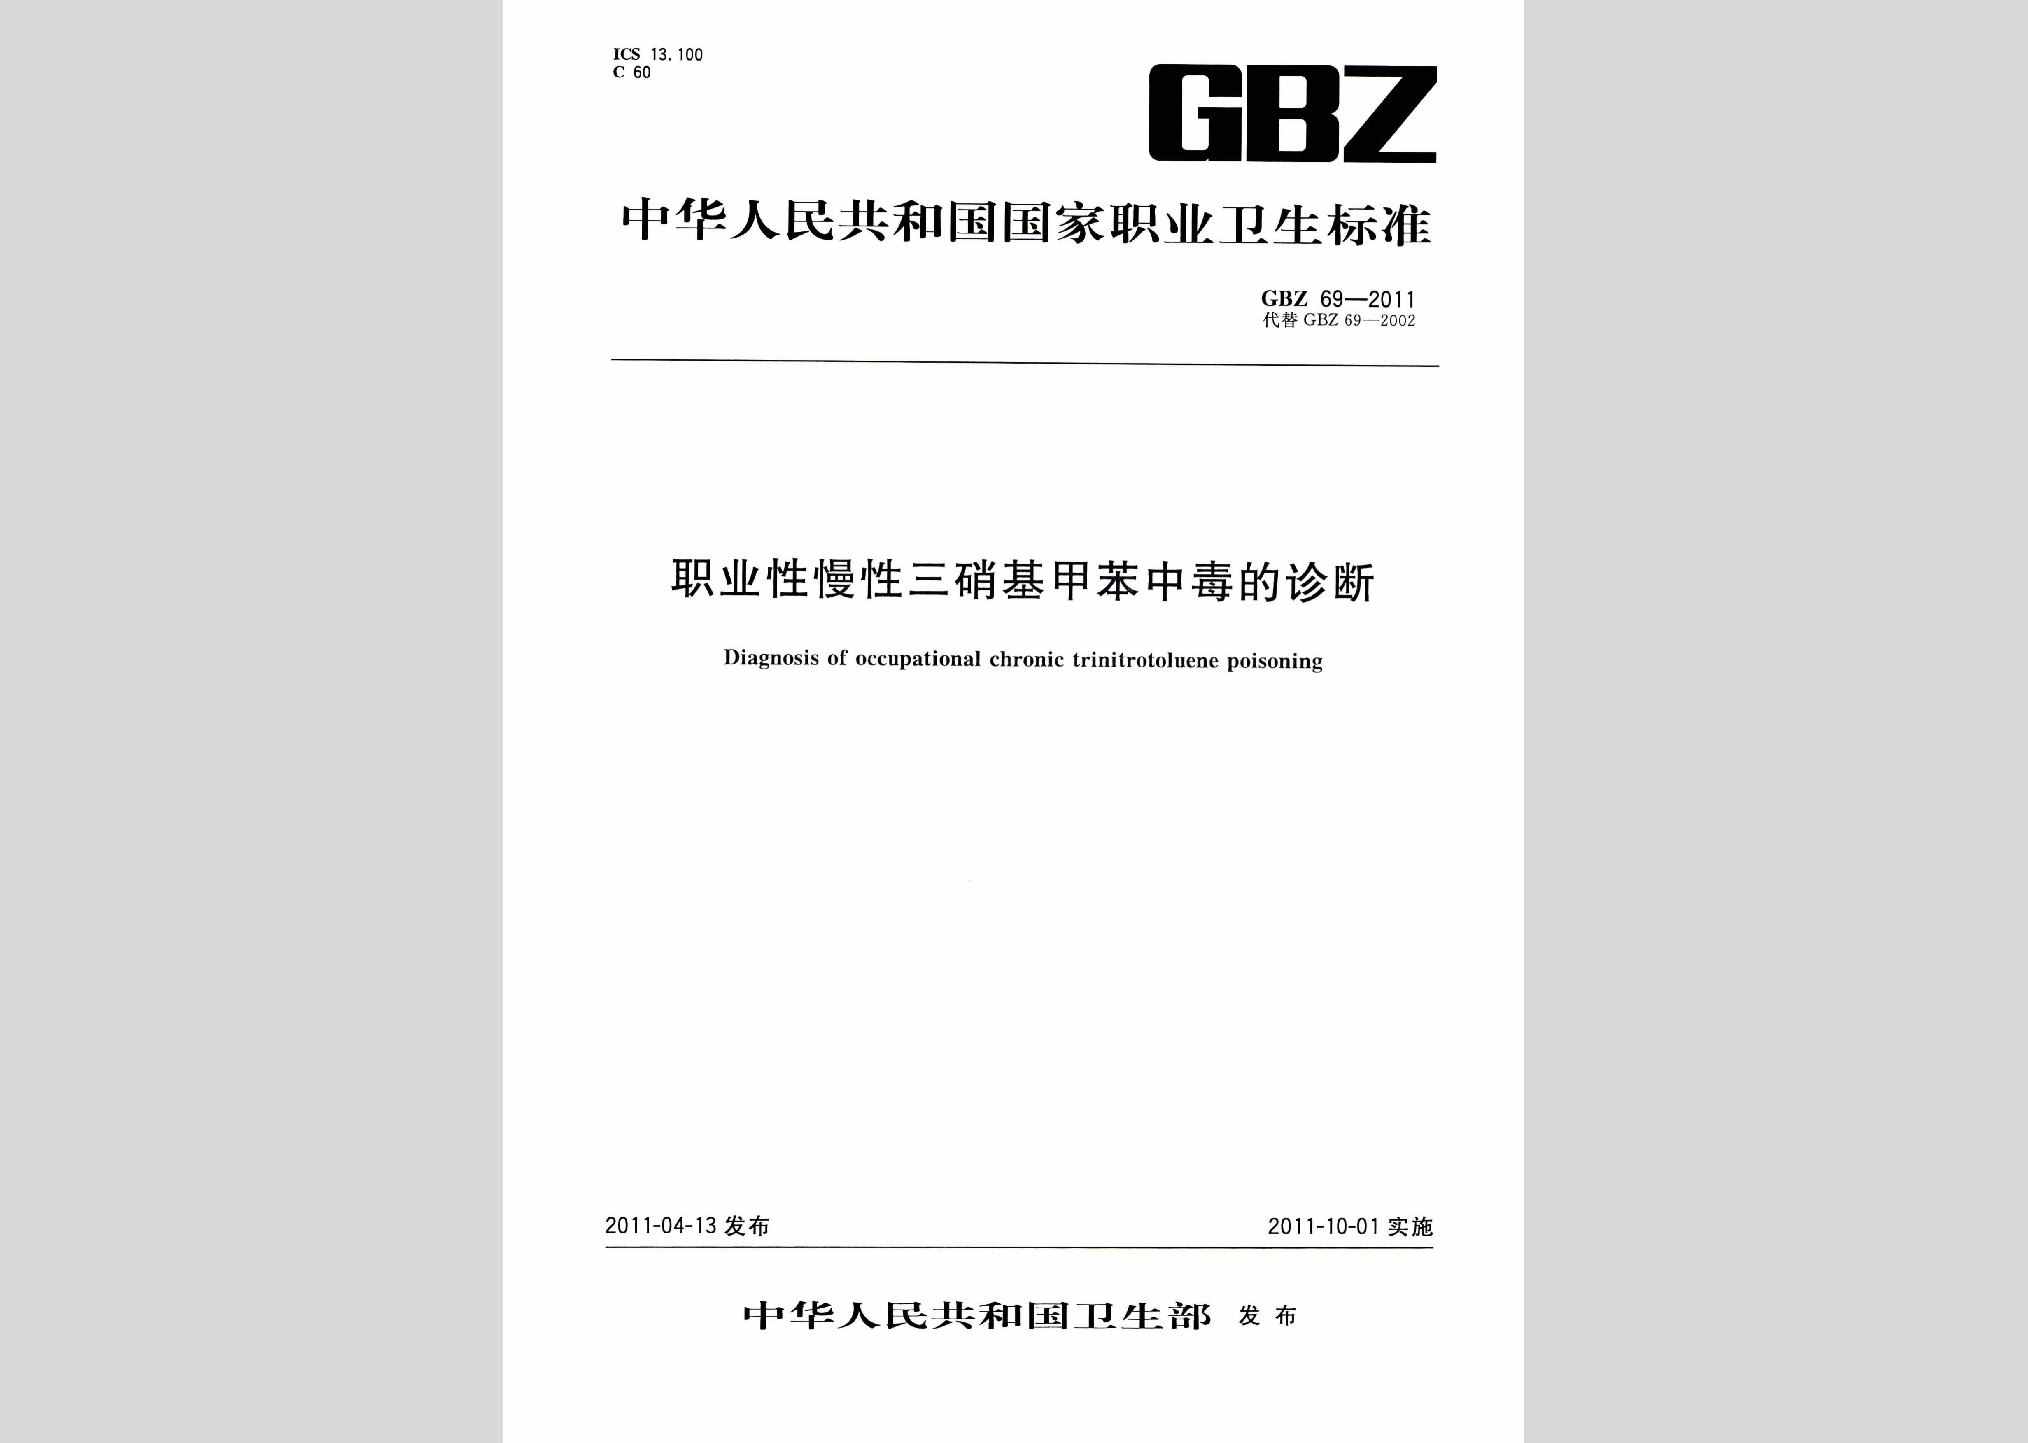 GBZ69-2011：职业性慢性三硝基甲苯中毒的诊断